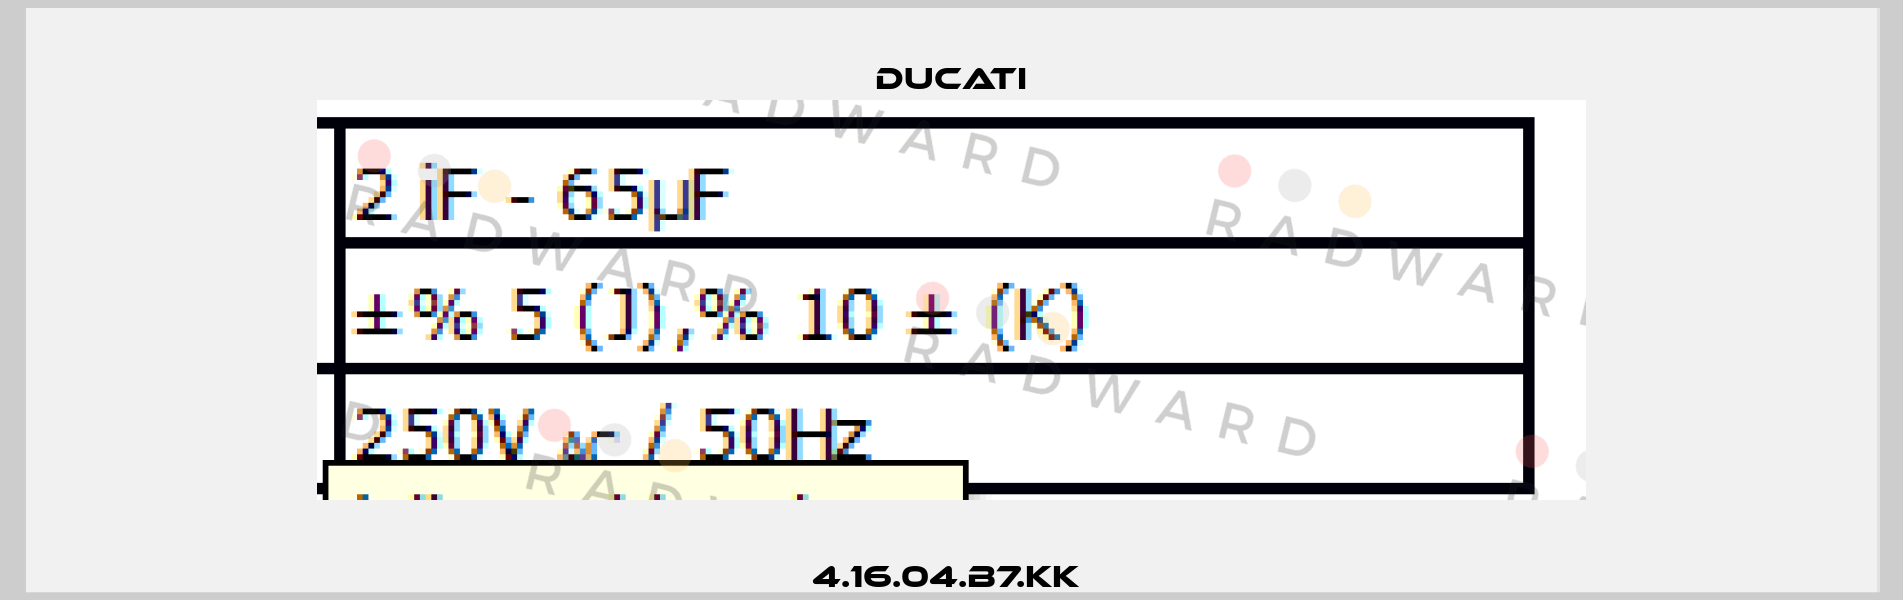 4.16.04.B7.KK  Ducati